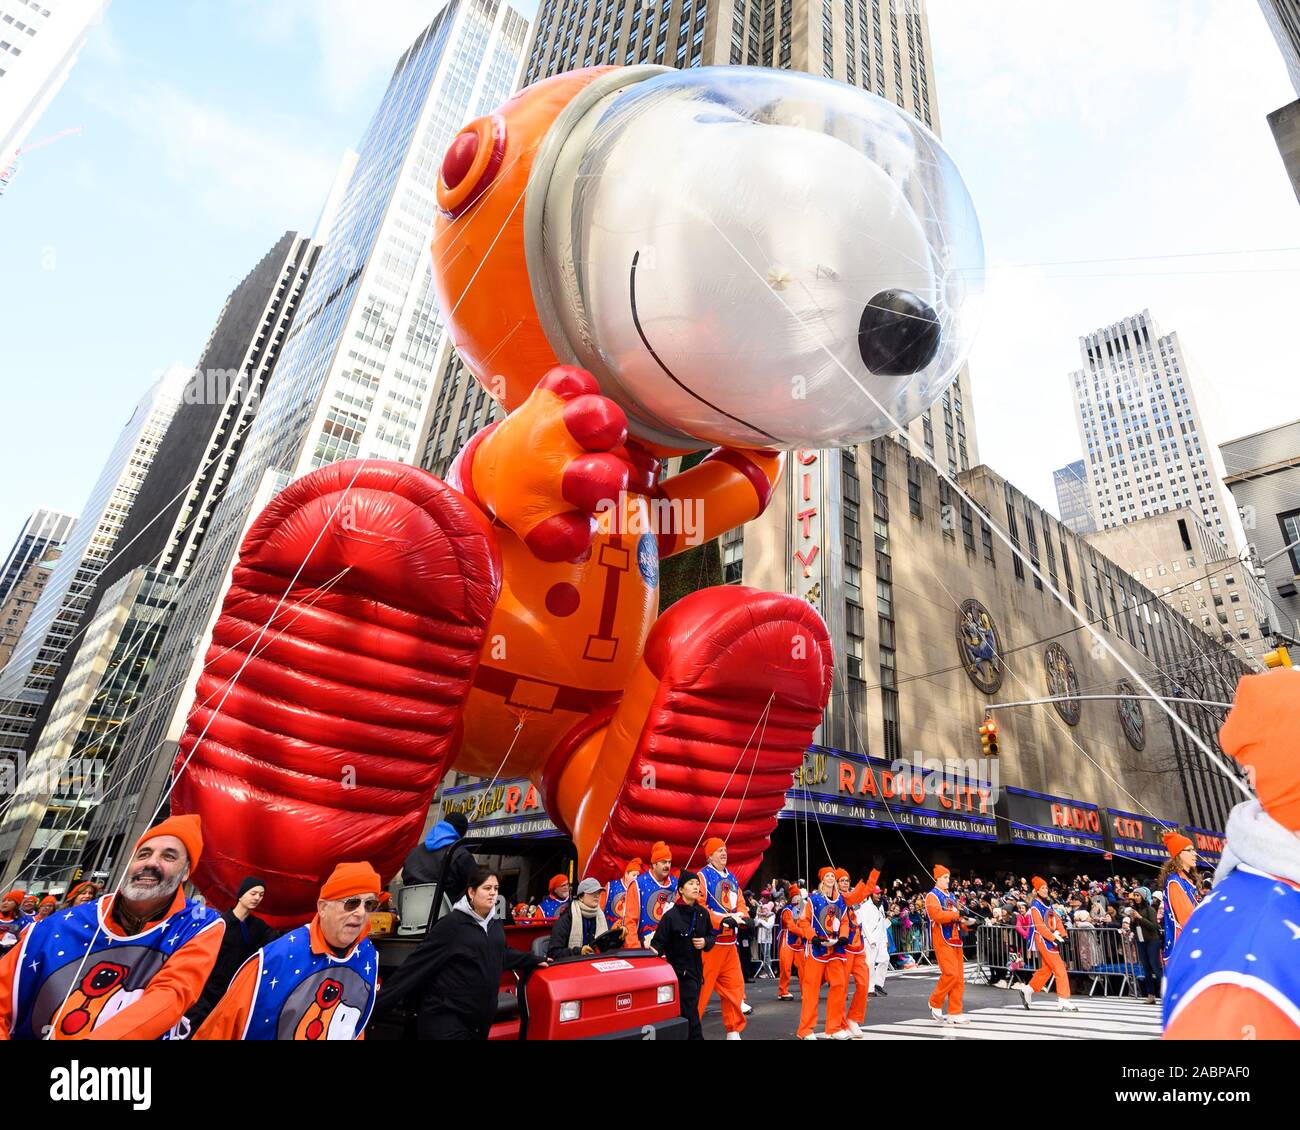 Snoopy le ballon à l'Macy's Thanksgiving Day Parade sur la sixième avenue, près de Radio City Music Hall. Banque D'Images